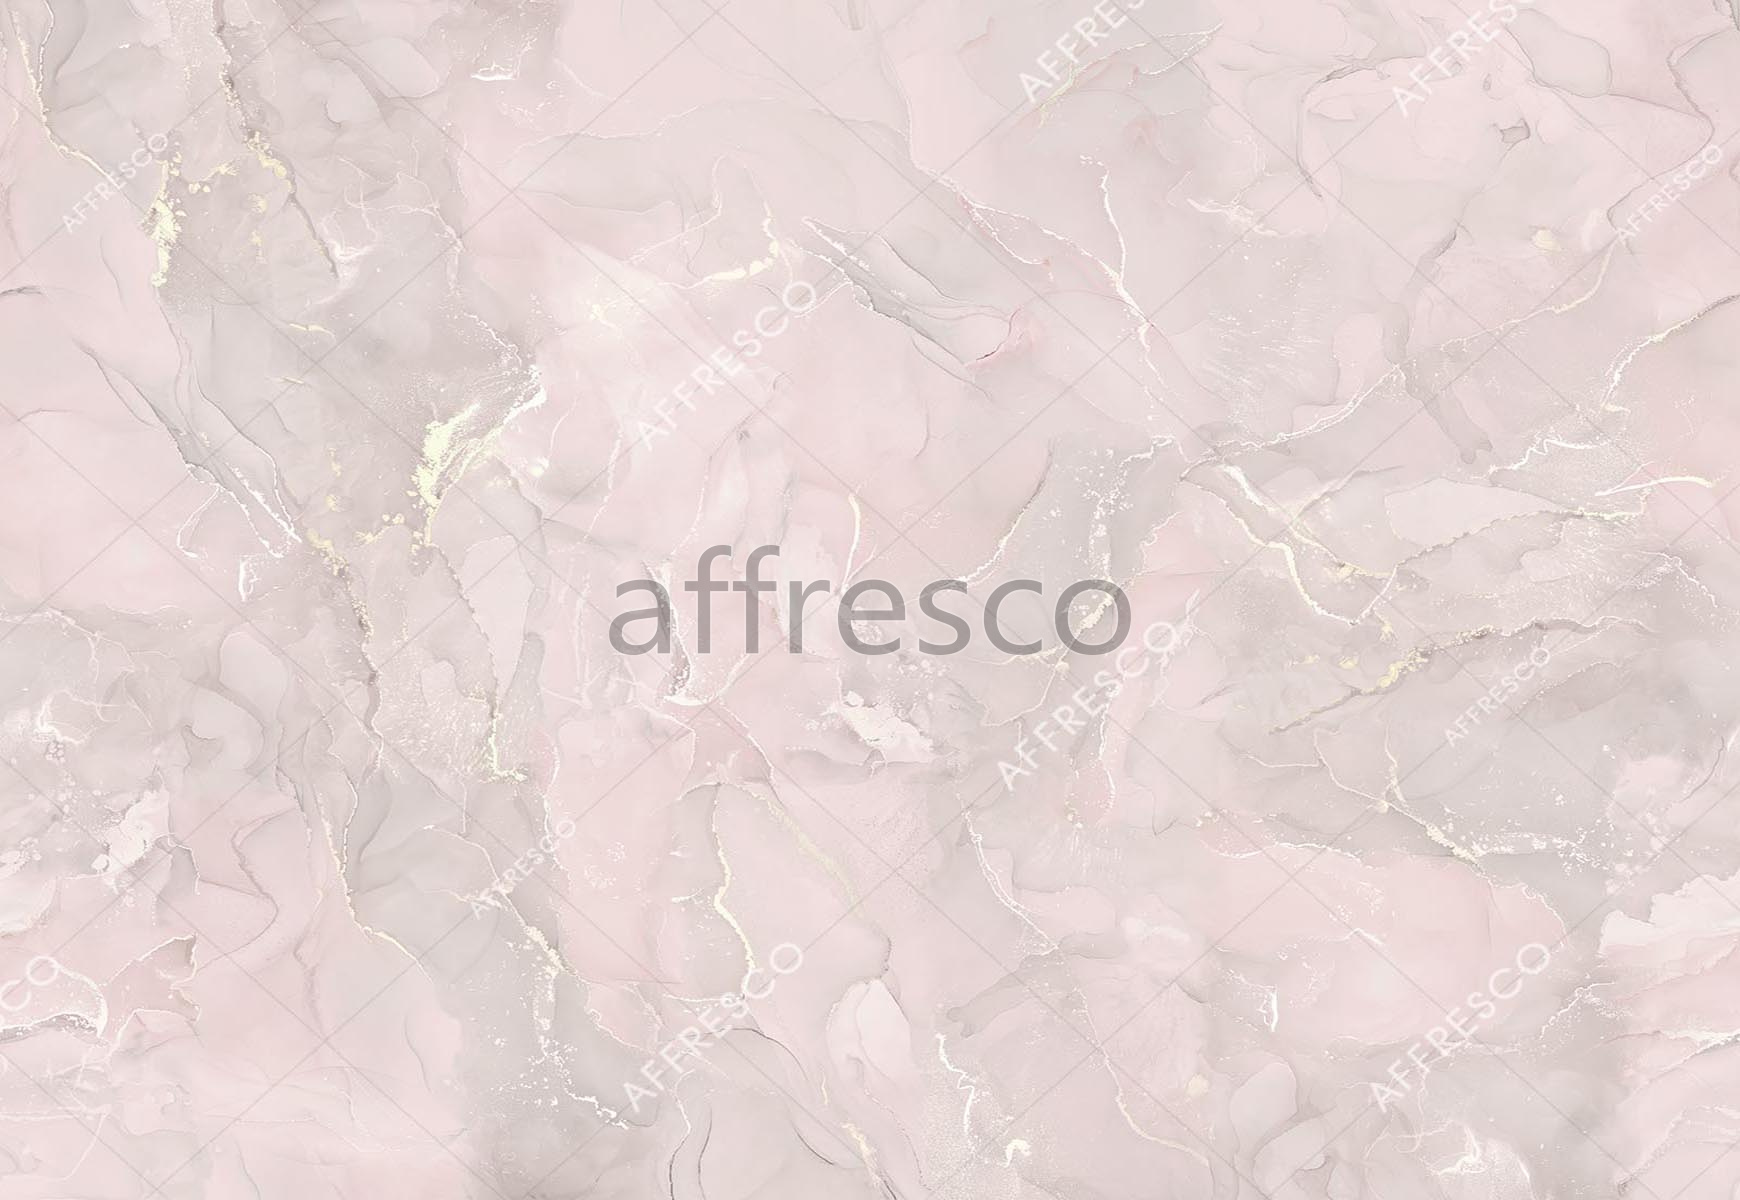 ID139087 | Fluid | smoky  quartz | Affresco Factory